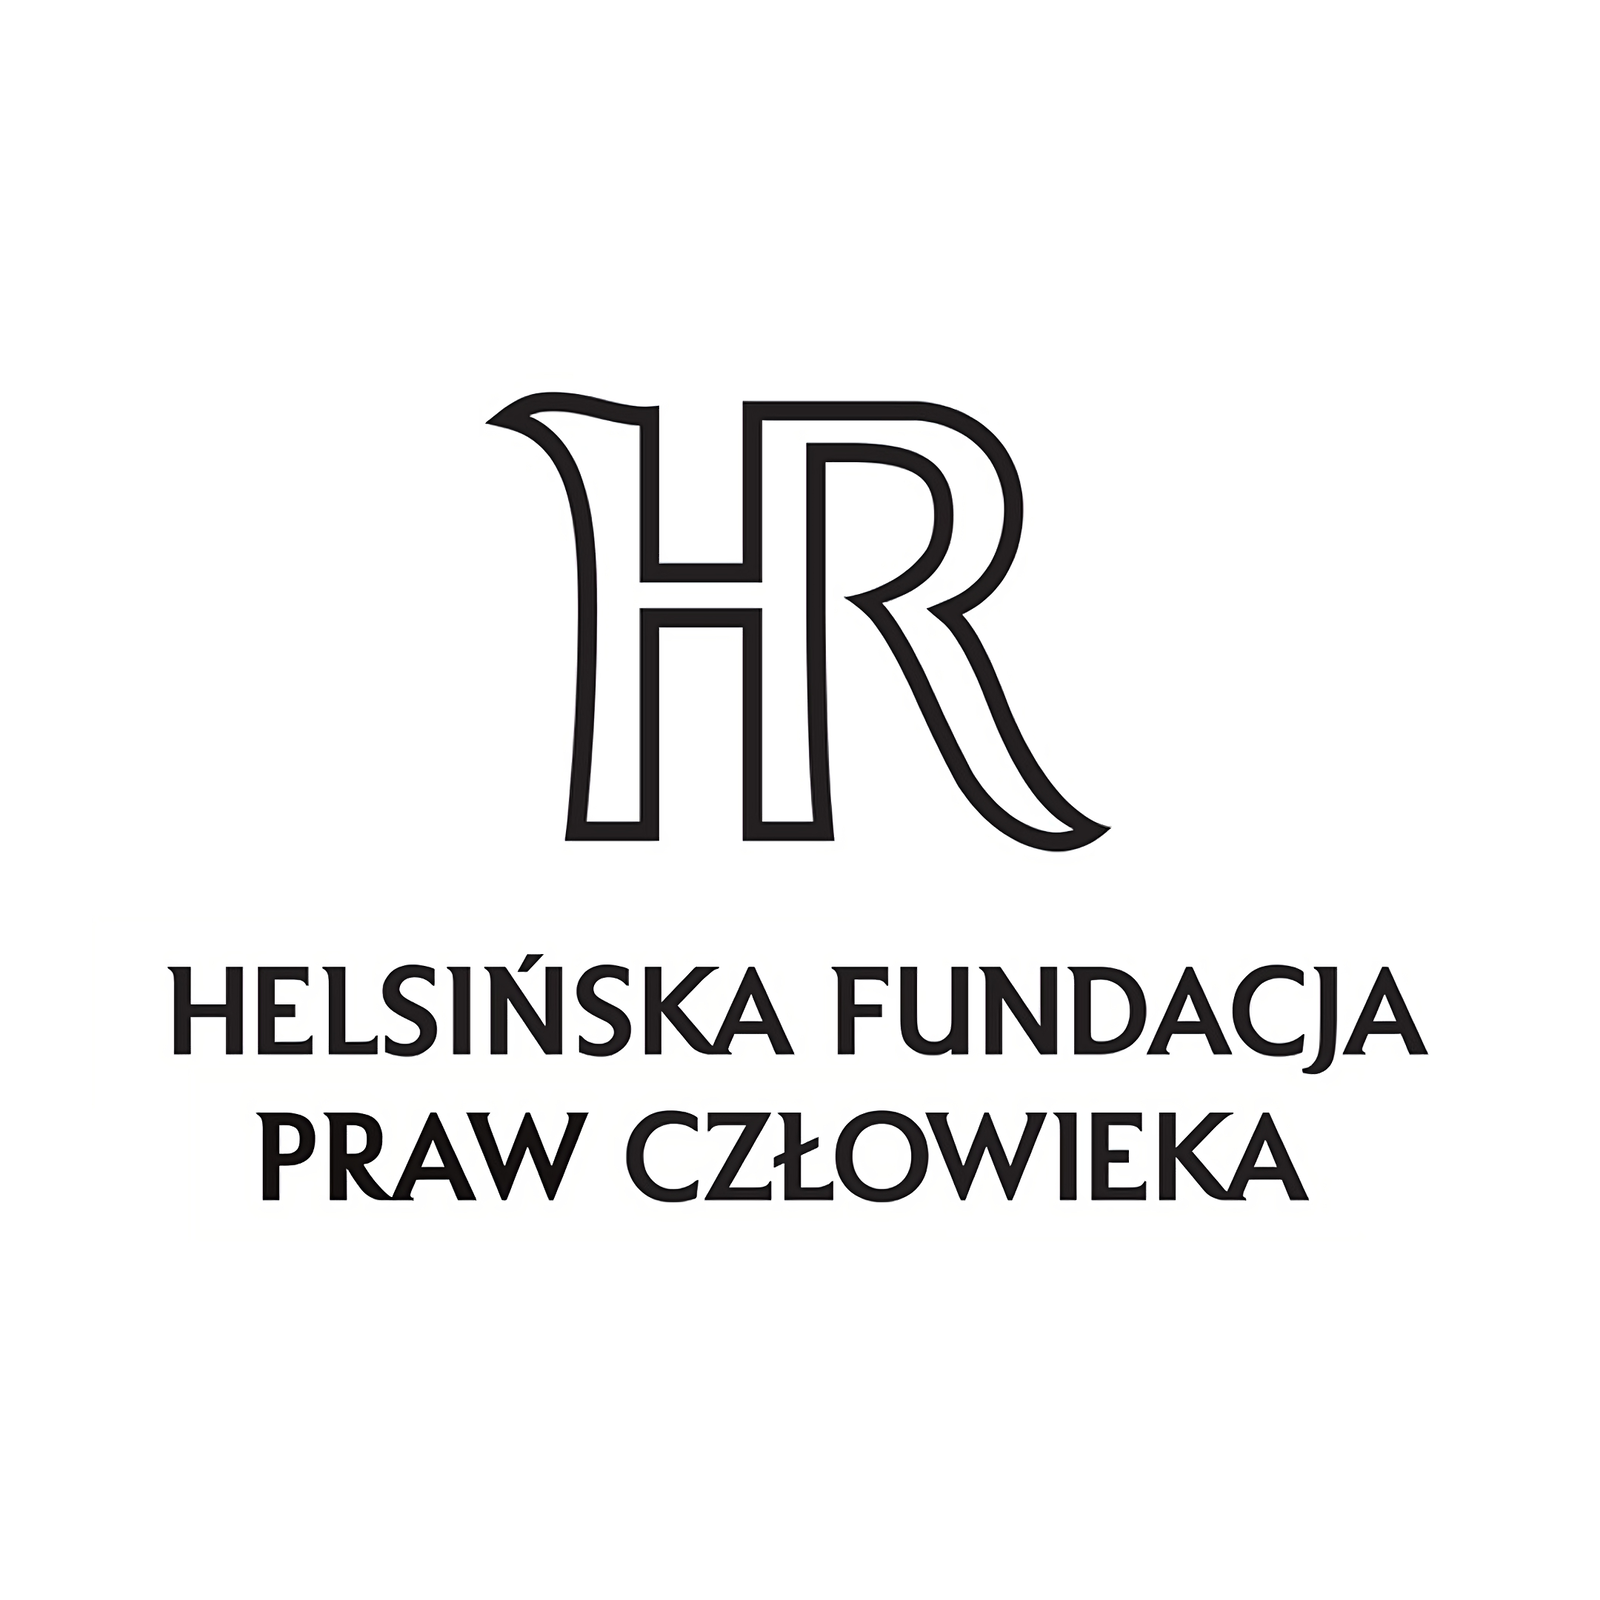 Logo Helsińskiej Fundacji Praw Człowieka: wyrzeźbione HR oraz pogrubiona pełna nazwa fundacji w czarnym kolorze.